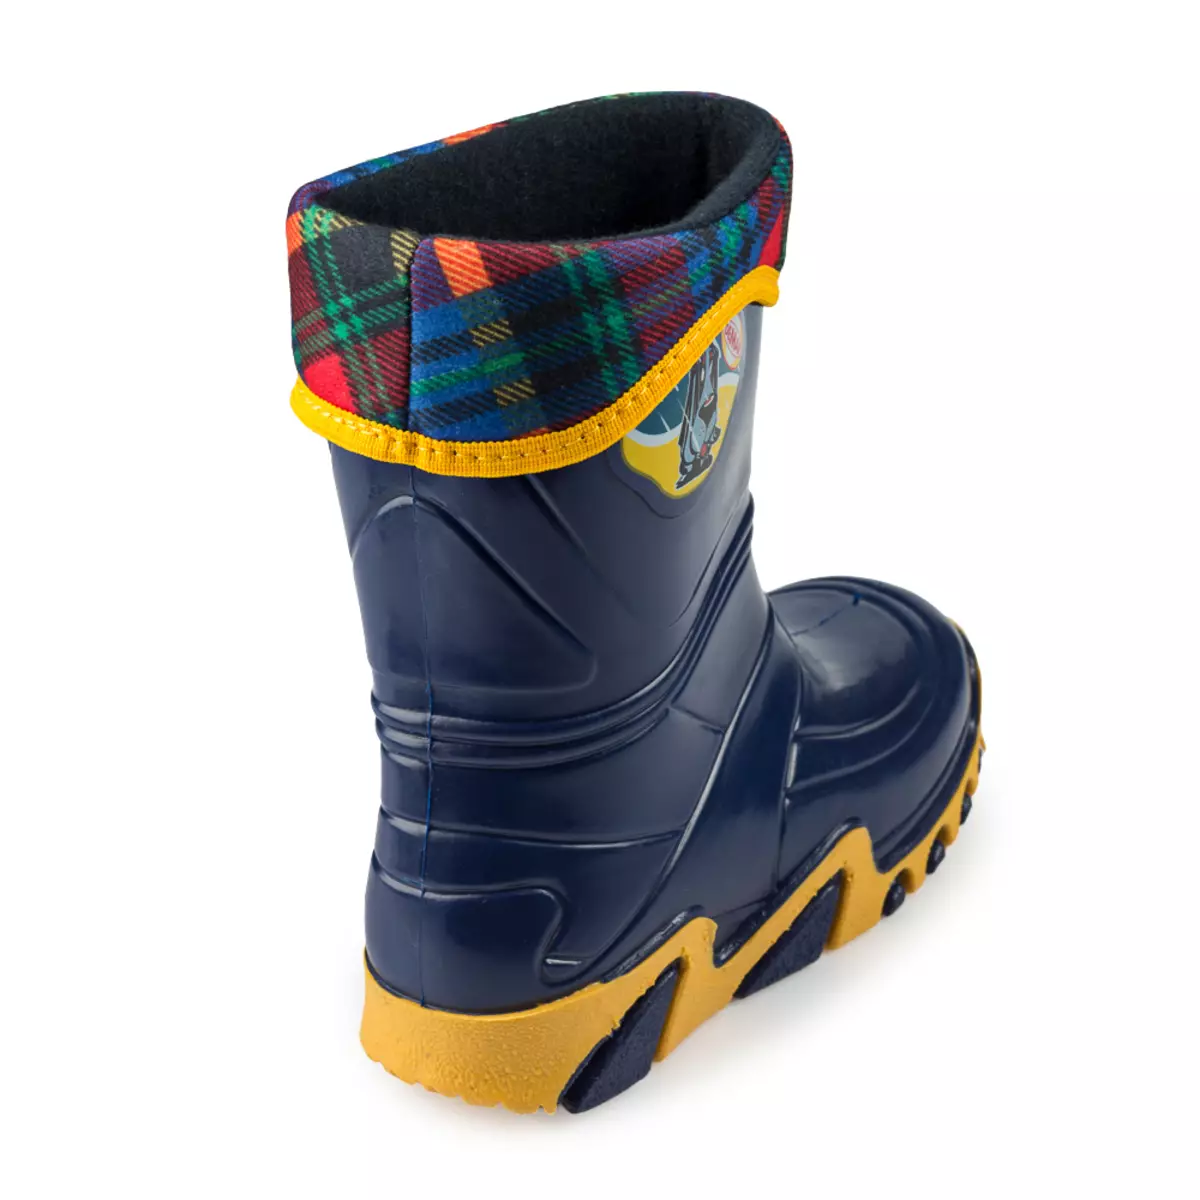 Lastik Boots Demar (67 Fotoğraf): Çocuk ayakkabısı, yalıtımlı modeller hakkında yorumlar 2236_14